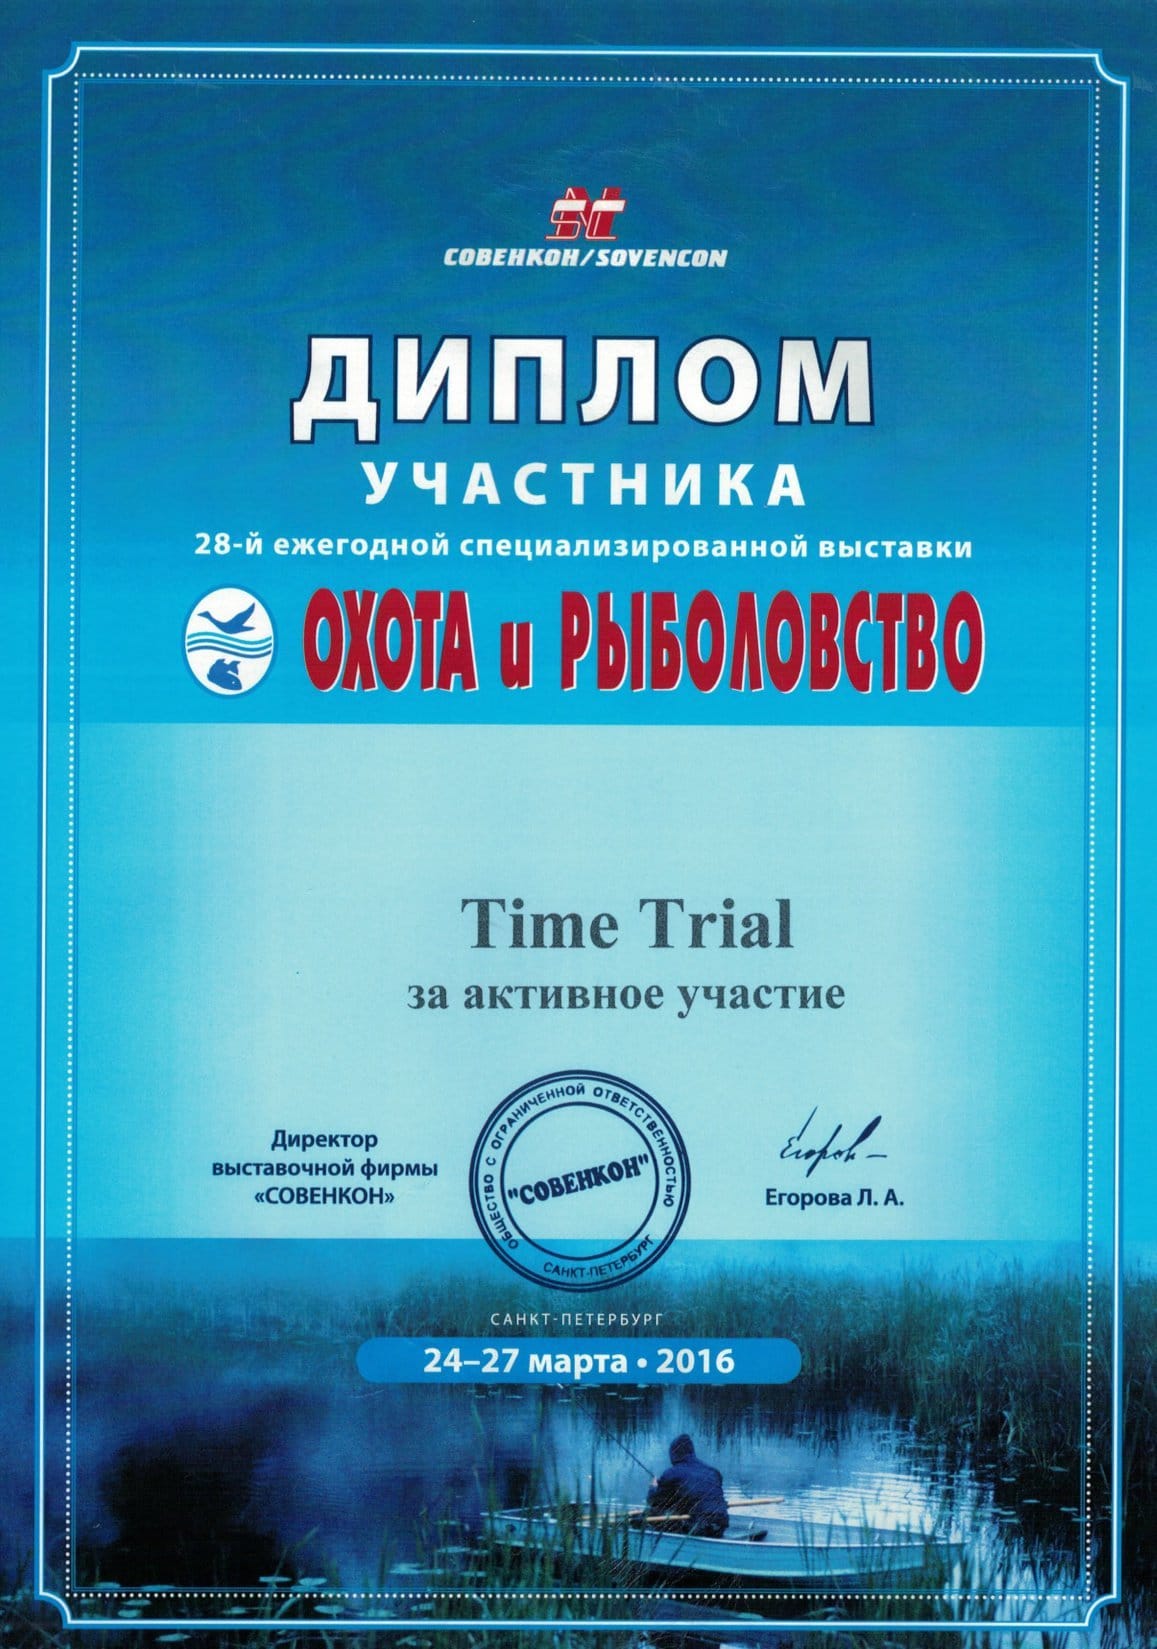 Охота и рыболовство на Руси - 2016